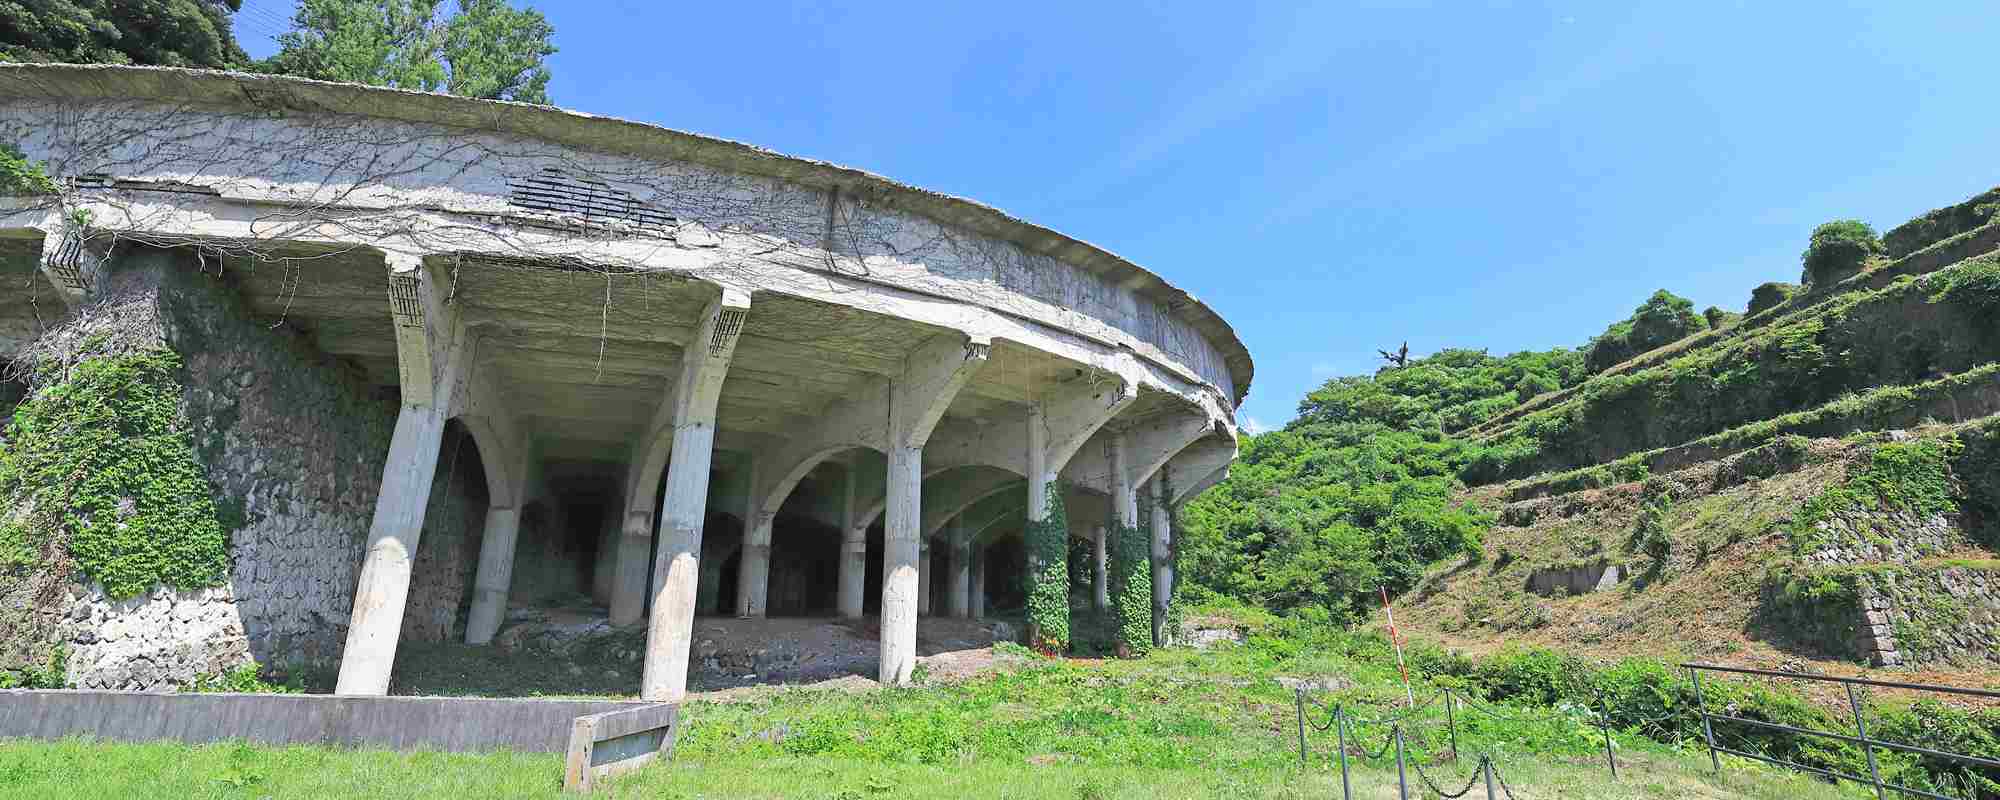 北沢浮遊選鉱場跡